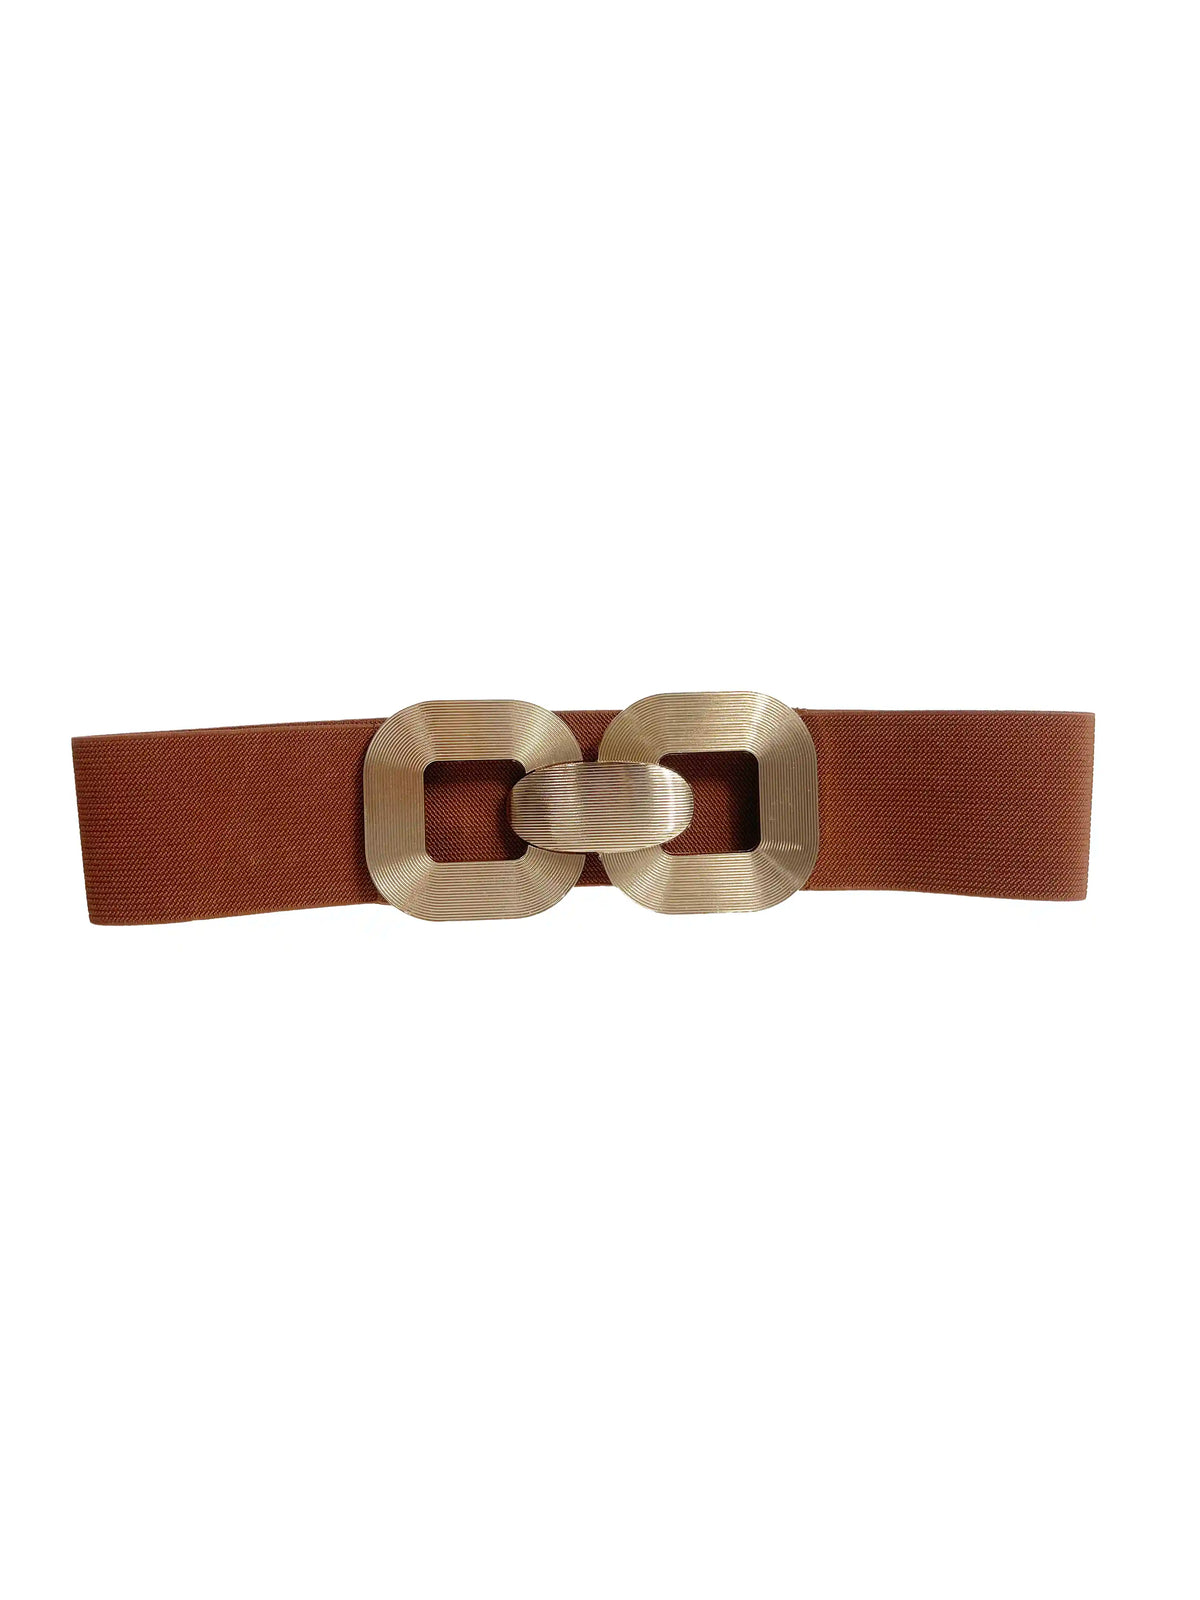 Cece - Cintura elasticizzata a vita alta beige e oro